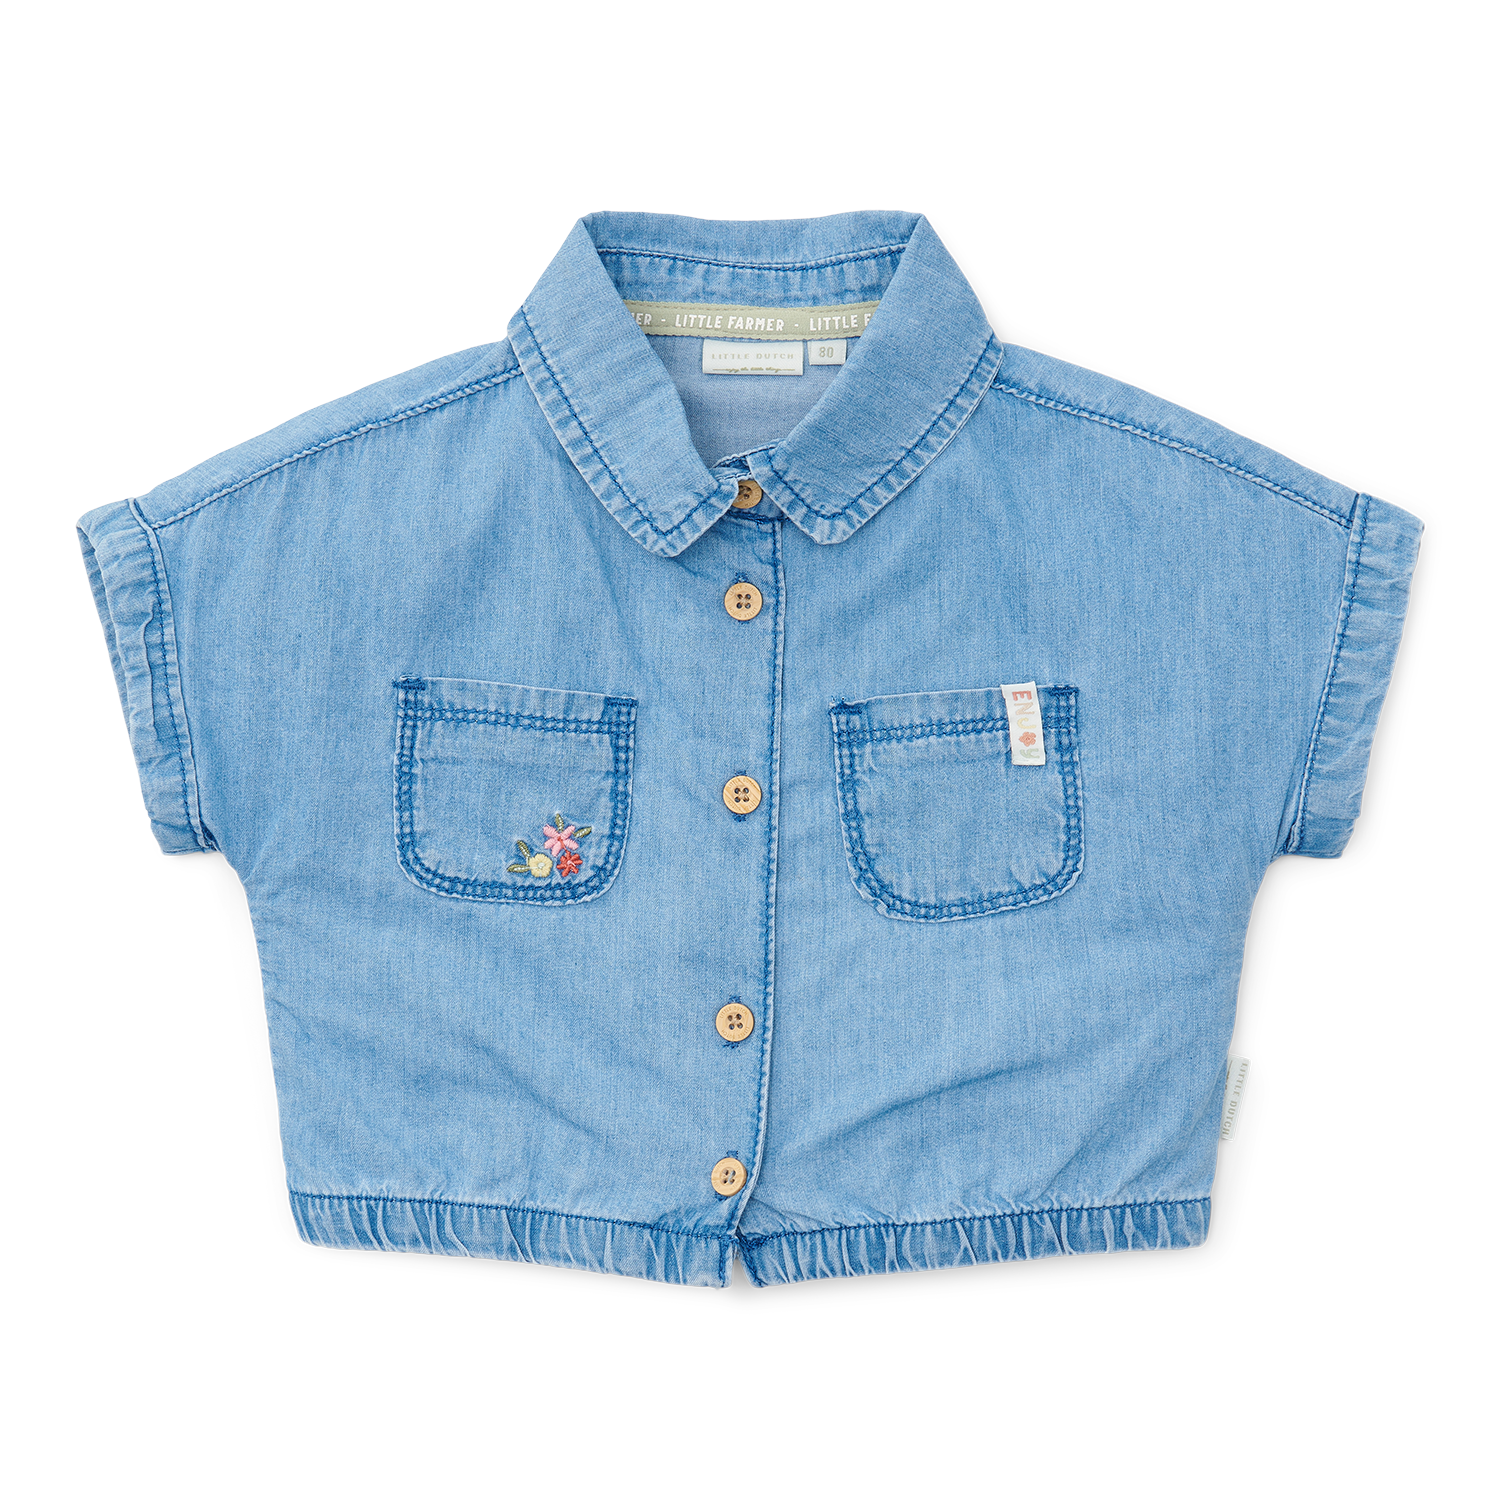 T-Shirt / Bluse Denim Little Farm jeans (Gr. 98)